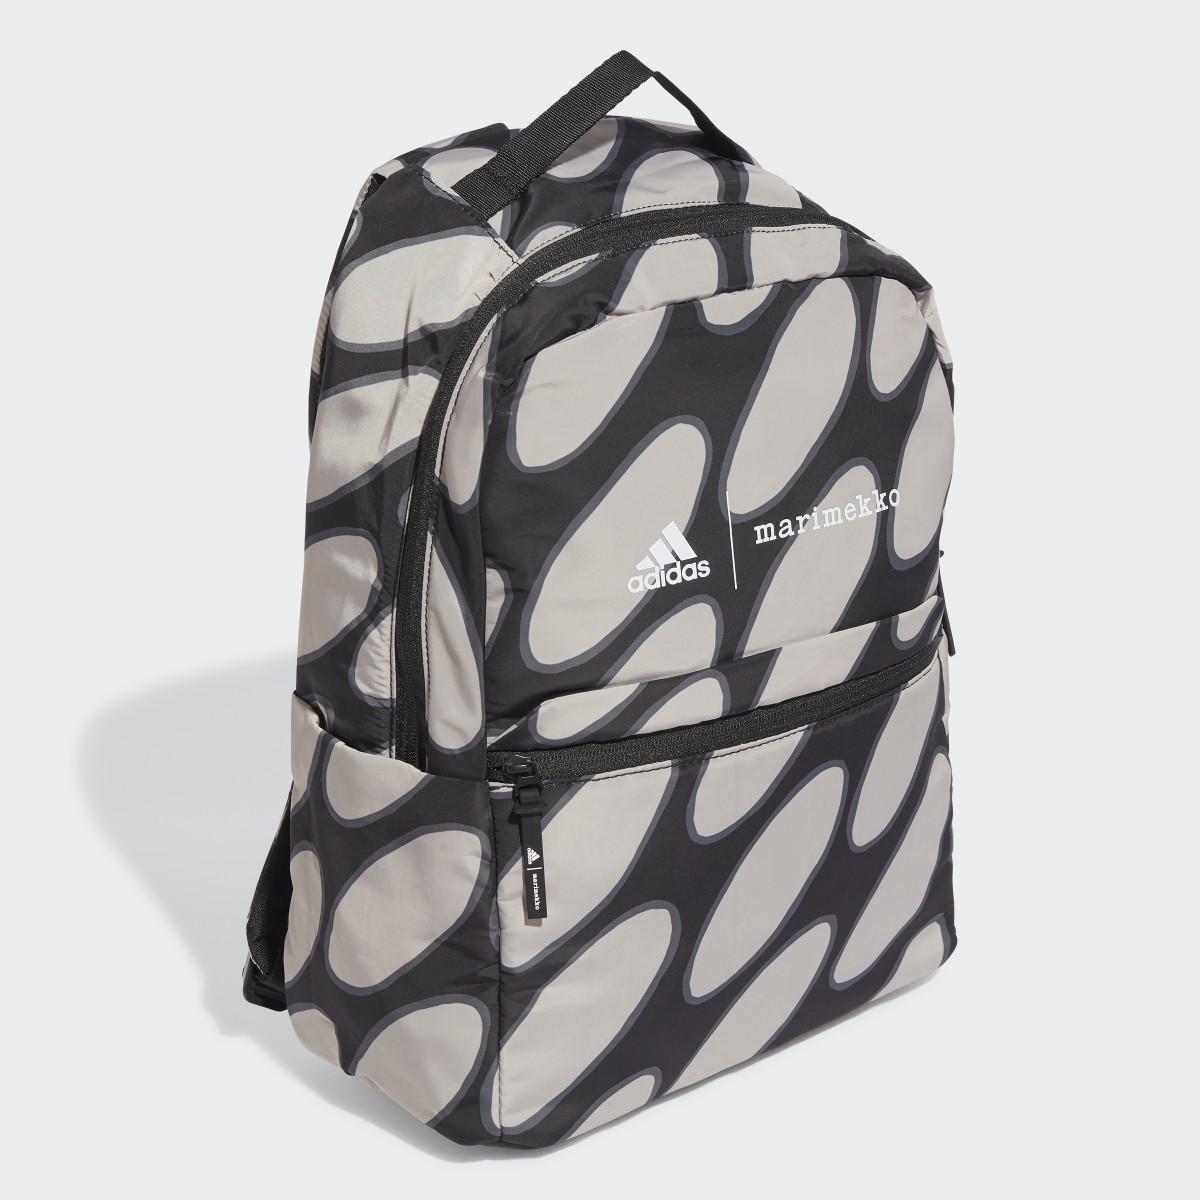 Adidas x Marimekko Backpack. 4